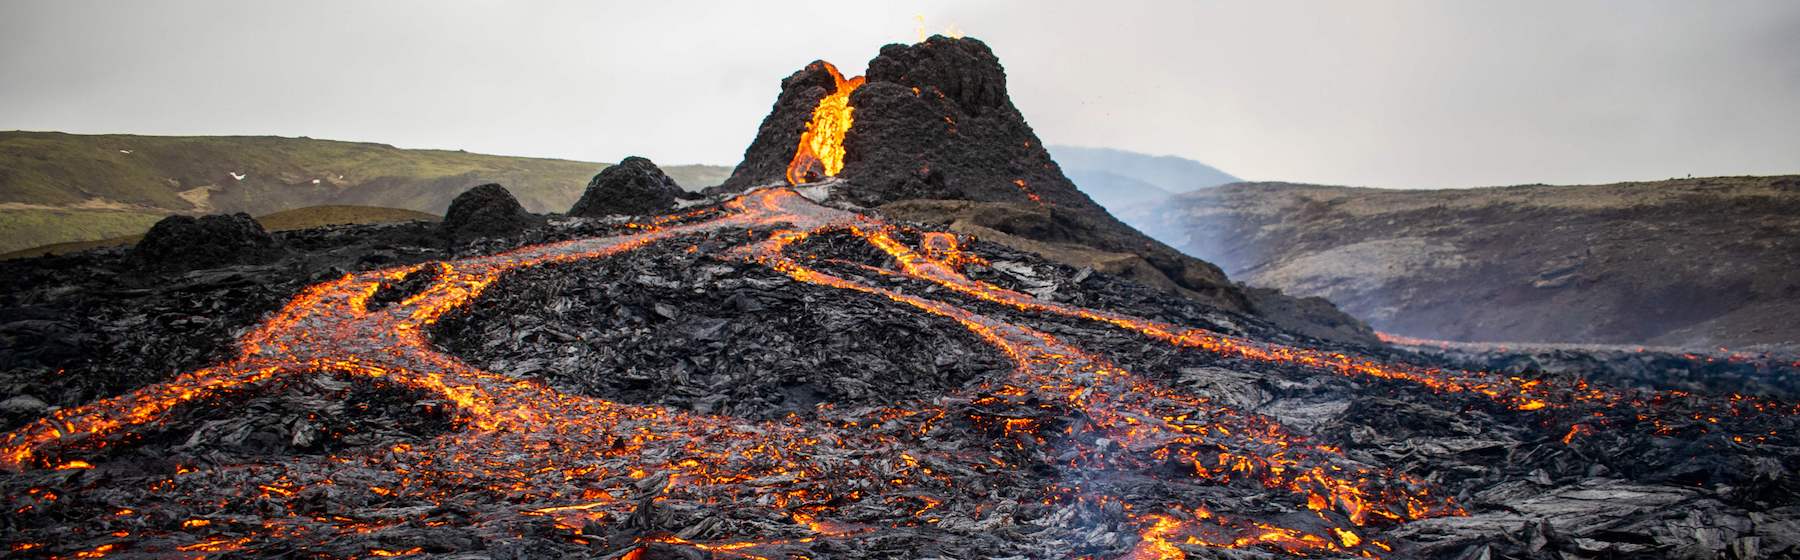 Le spettacolari immagini dell’eruzione del vulcano Fagradalsfjall in Islanda